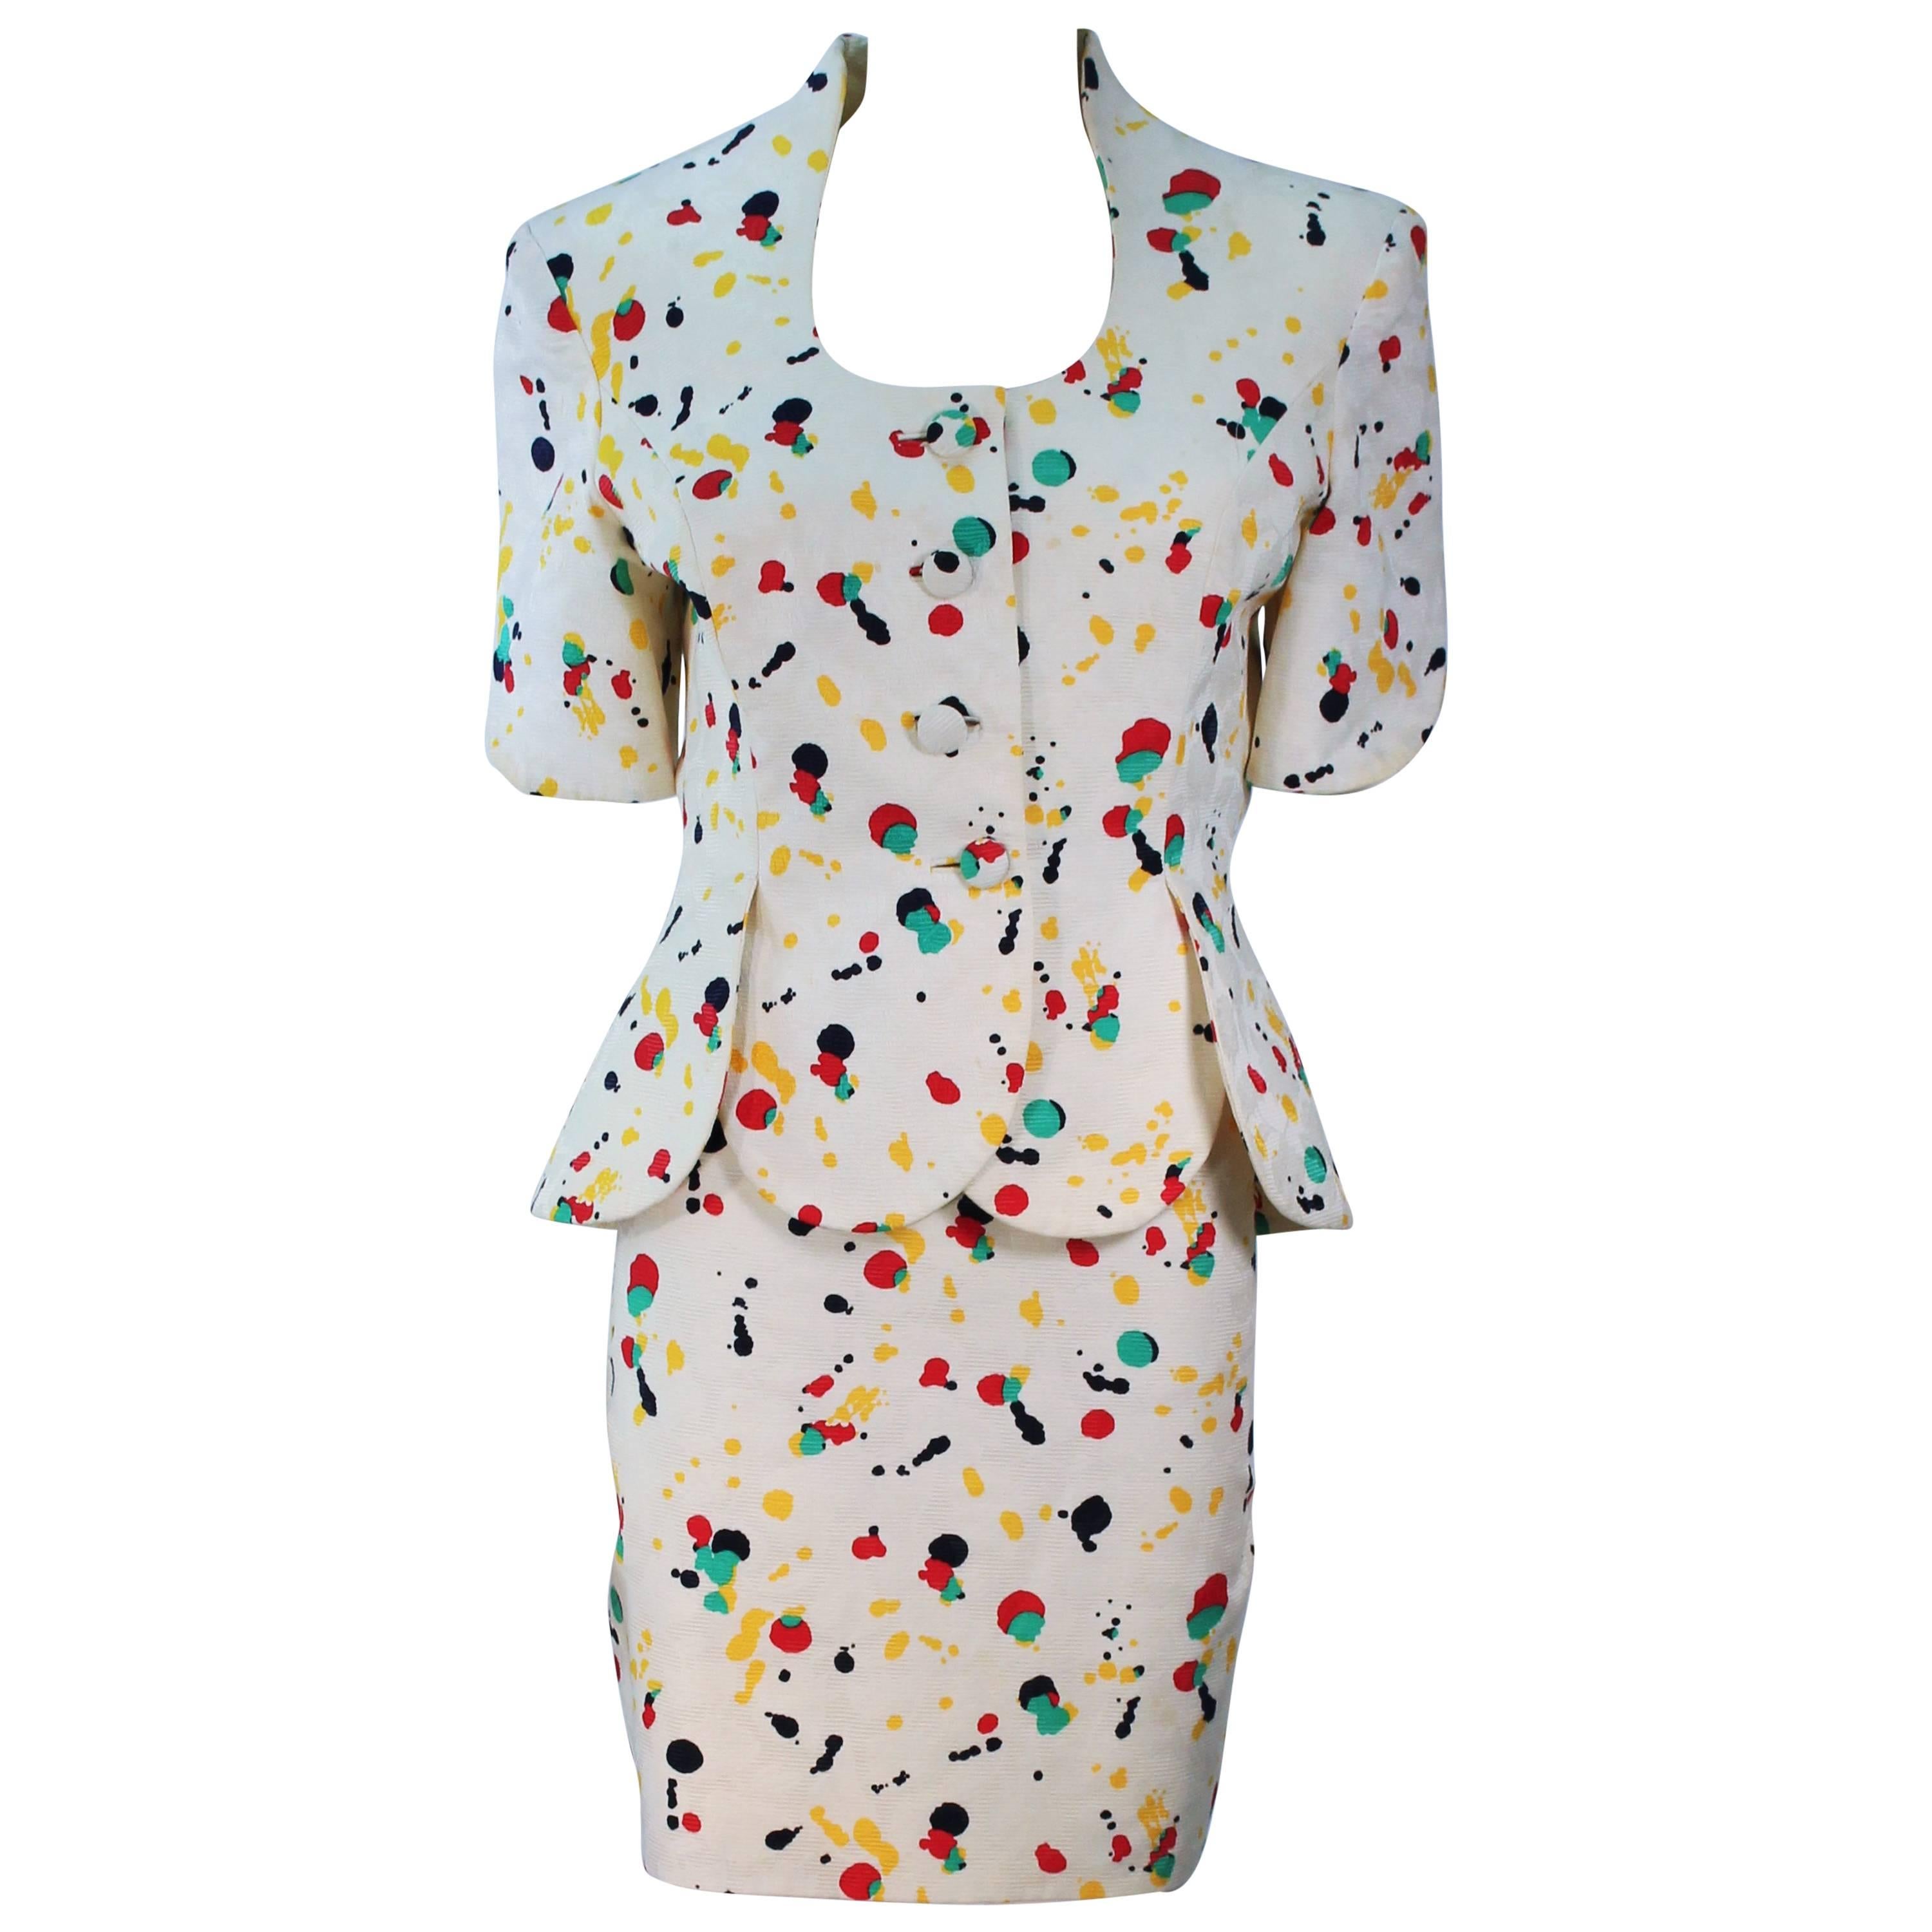 TRAVILLA Color Pop Paint Splatter Floral Skirt Suit Size 6 For Sale